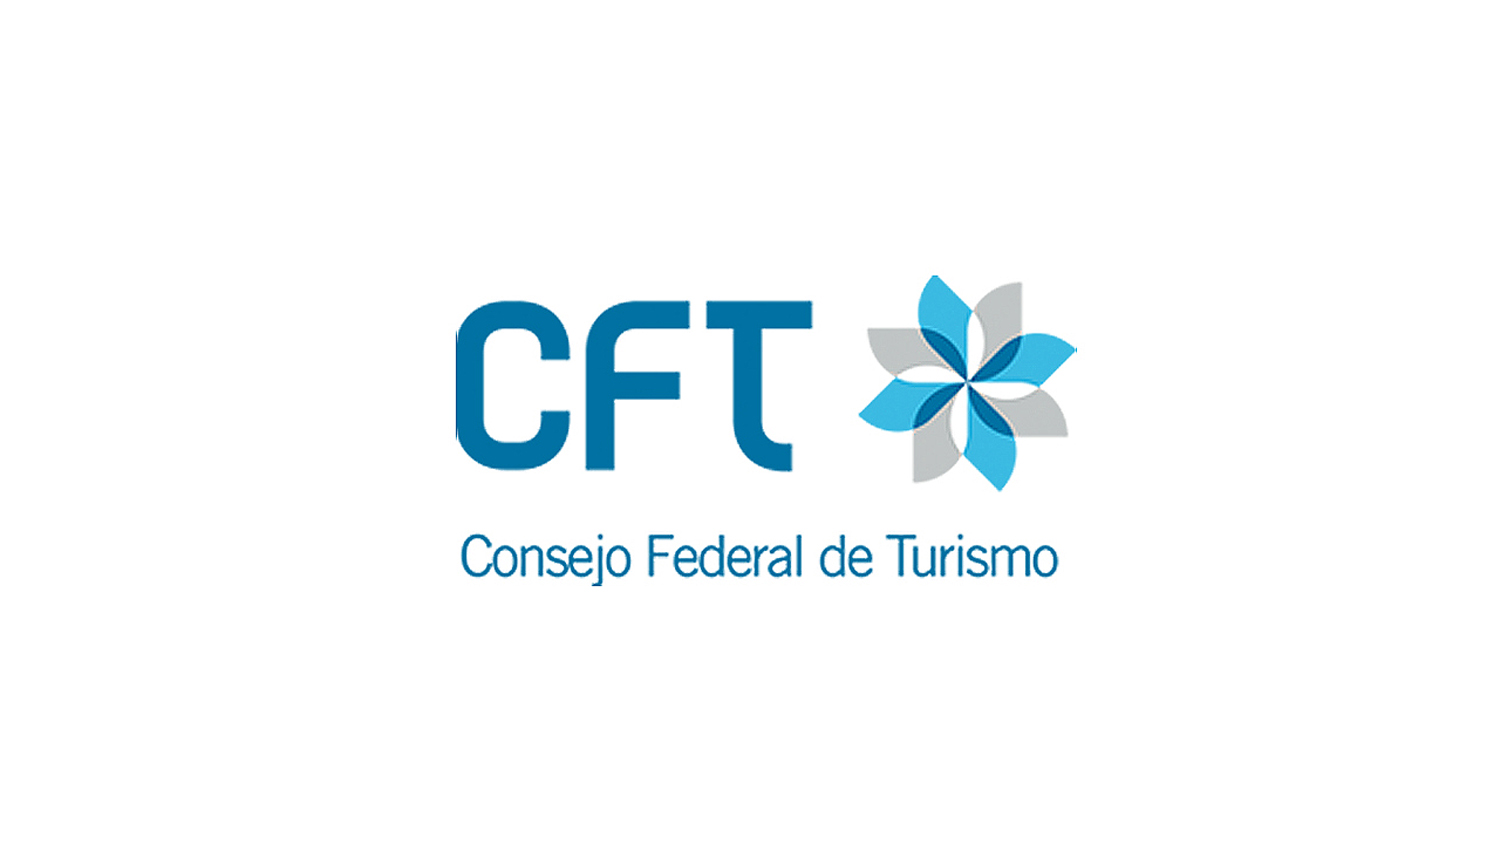 Consejo Federal de Turismo